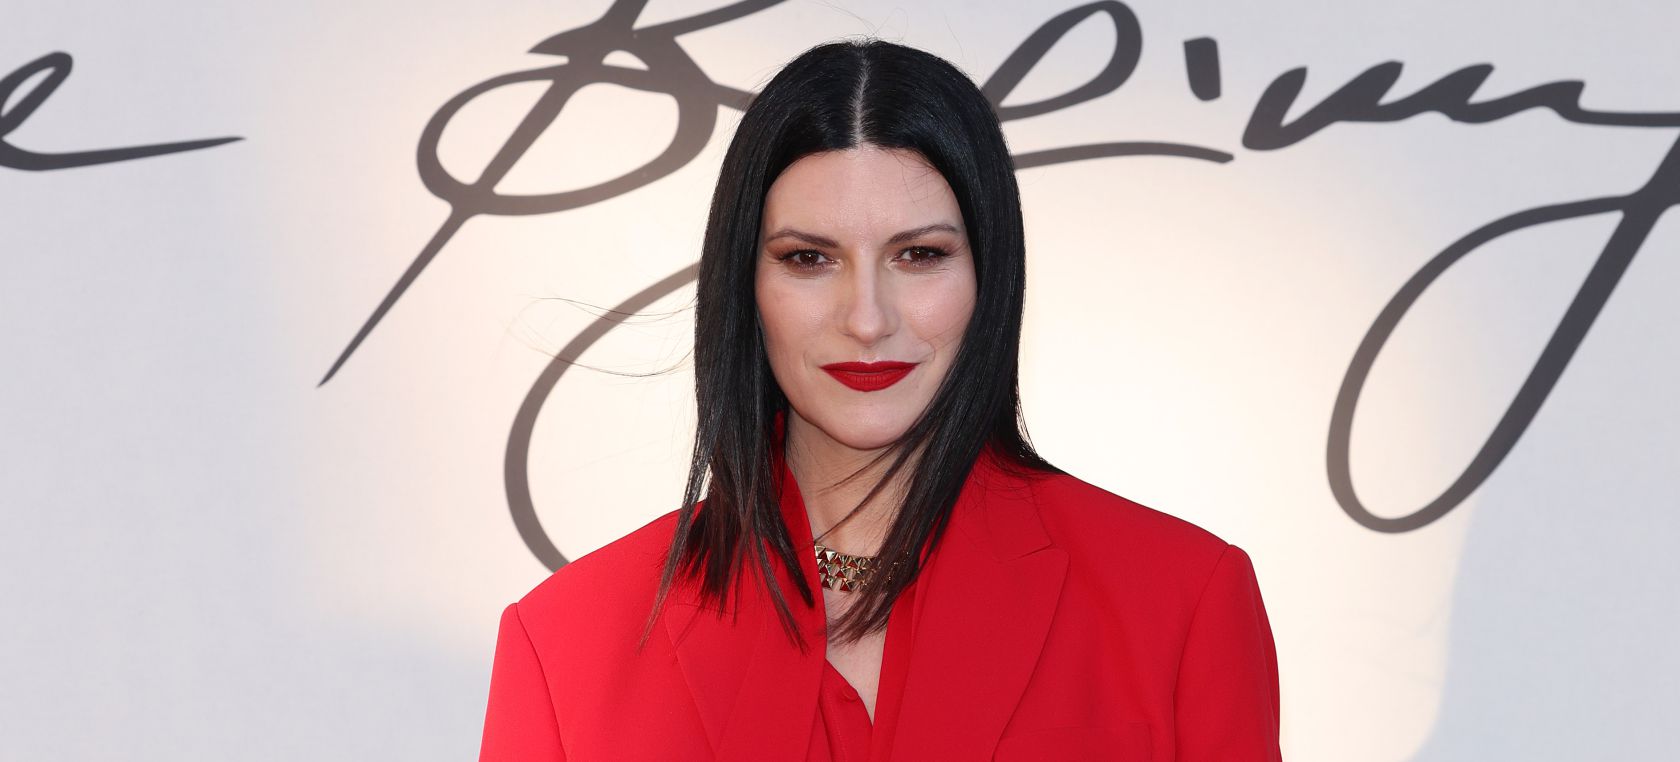 La razón por la que Laura Pausini se negó a cantar ‘Bella Ciao’ en El Hormiguero